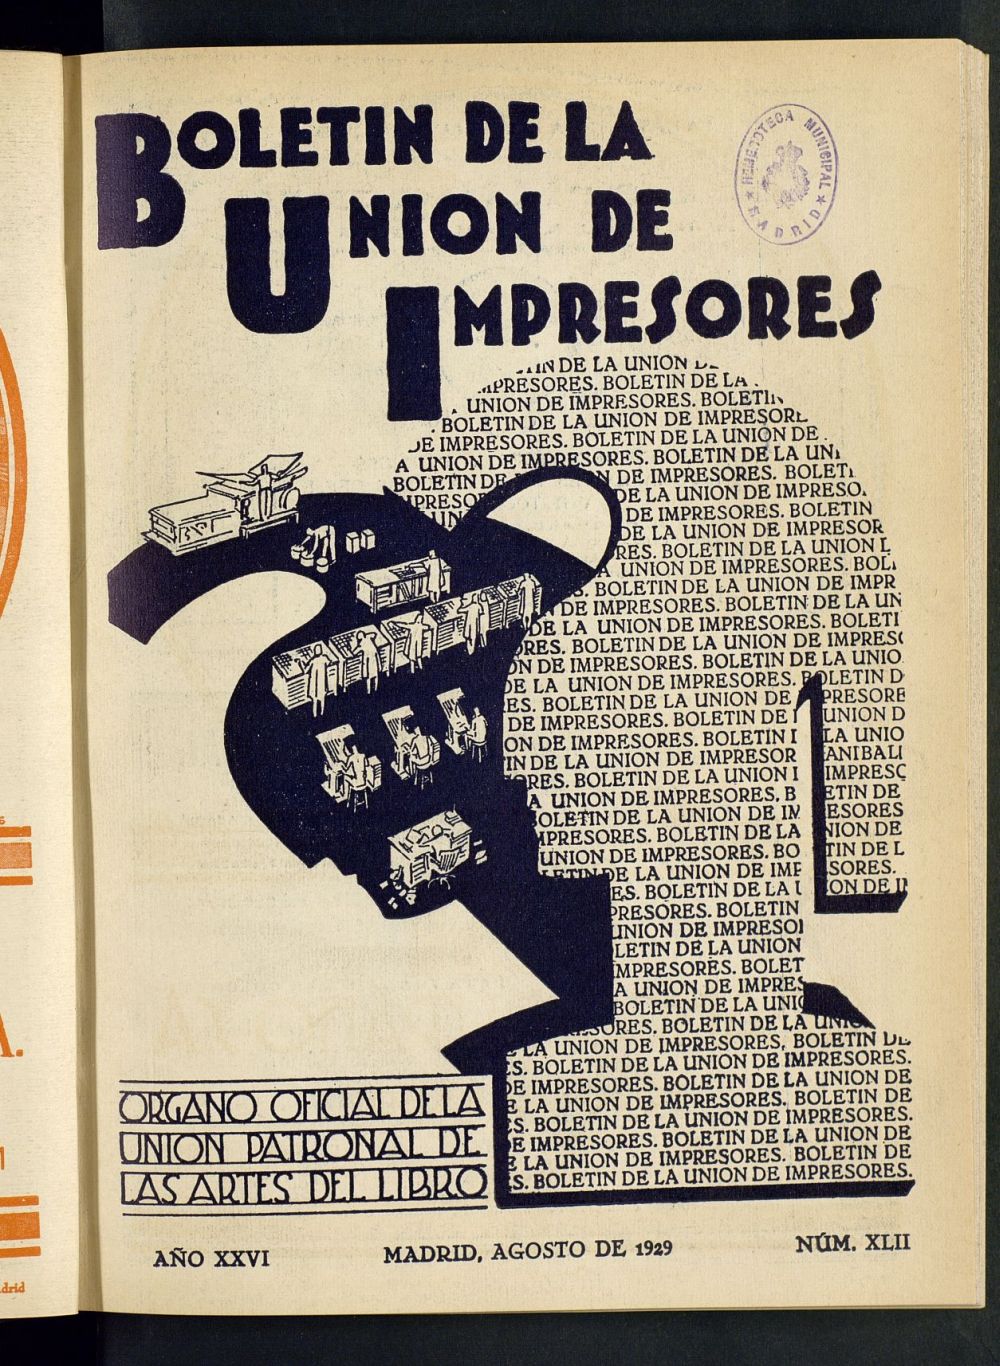 Boletn de la unin de impresores : rgano de la unin patronal de las artes del libro de agosto de 1929